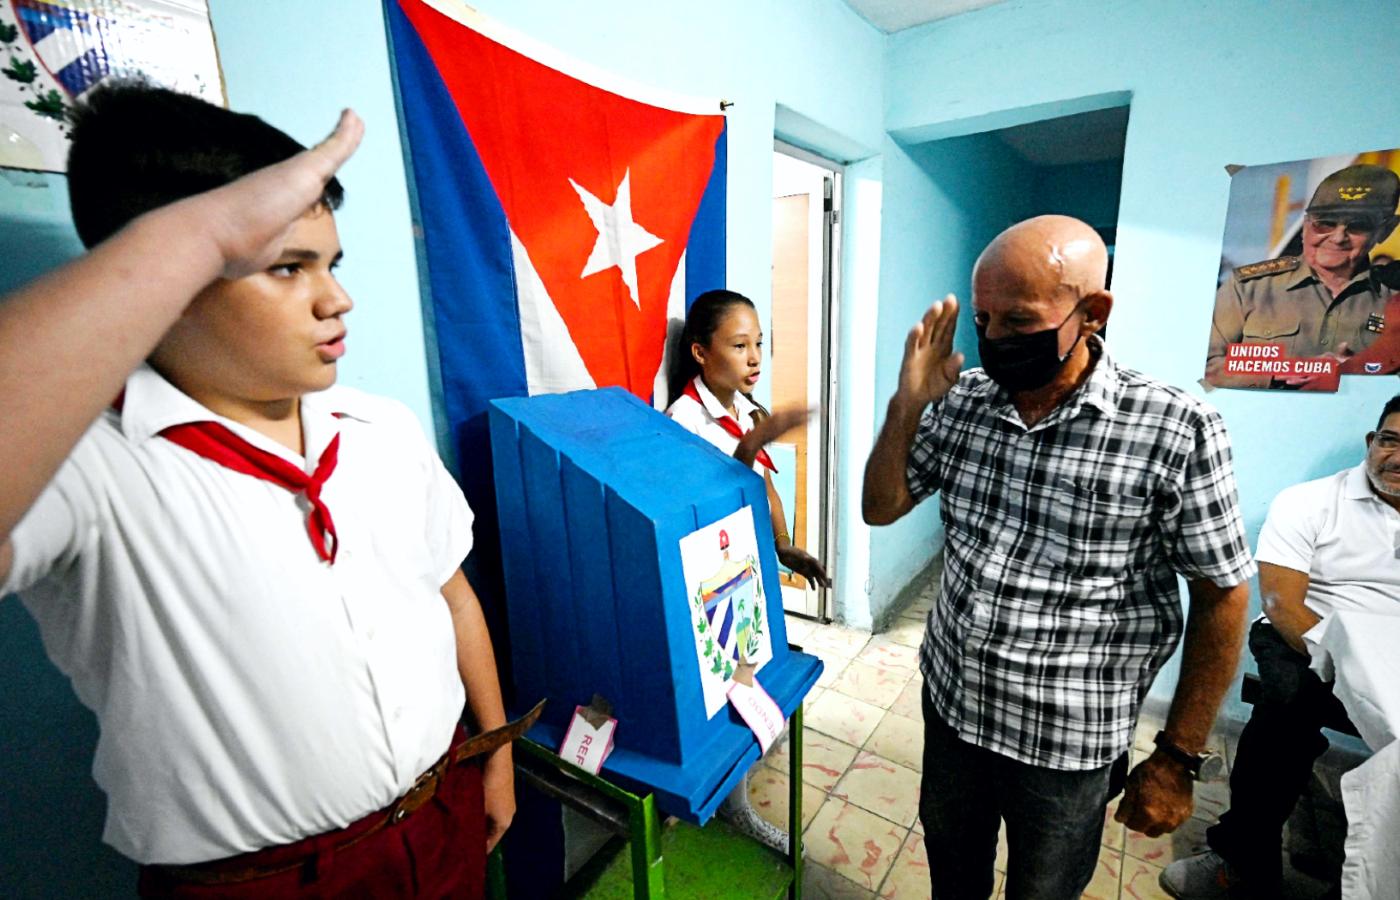 Nowy kodeks prawa rodzinnego radykalnie zmieni krajobraz relacji społecznych na Kubie.